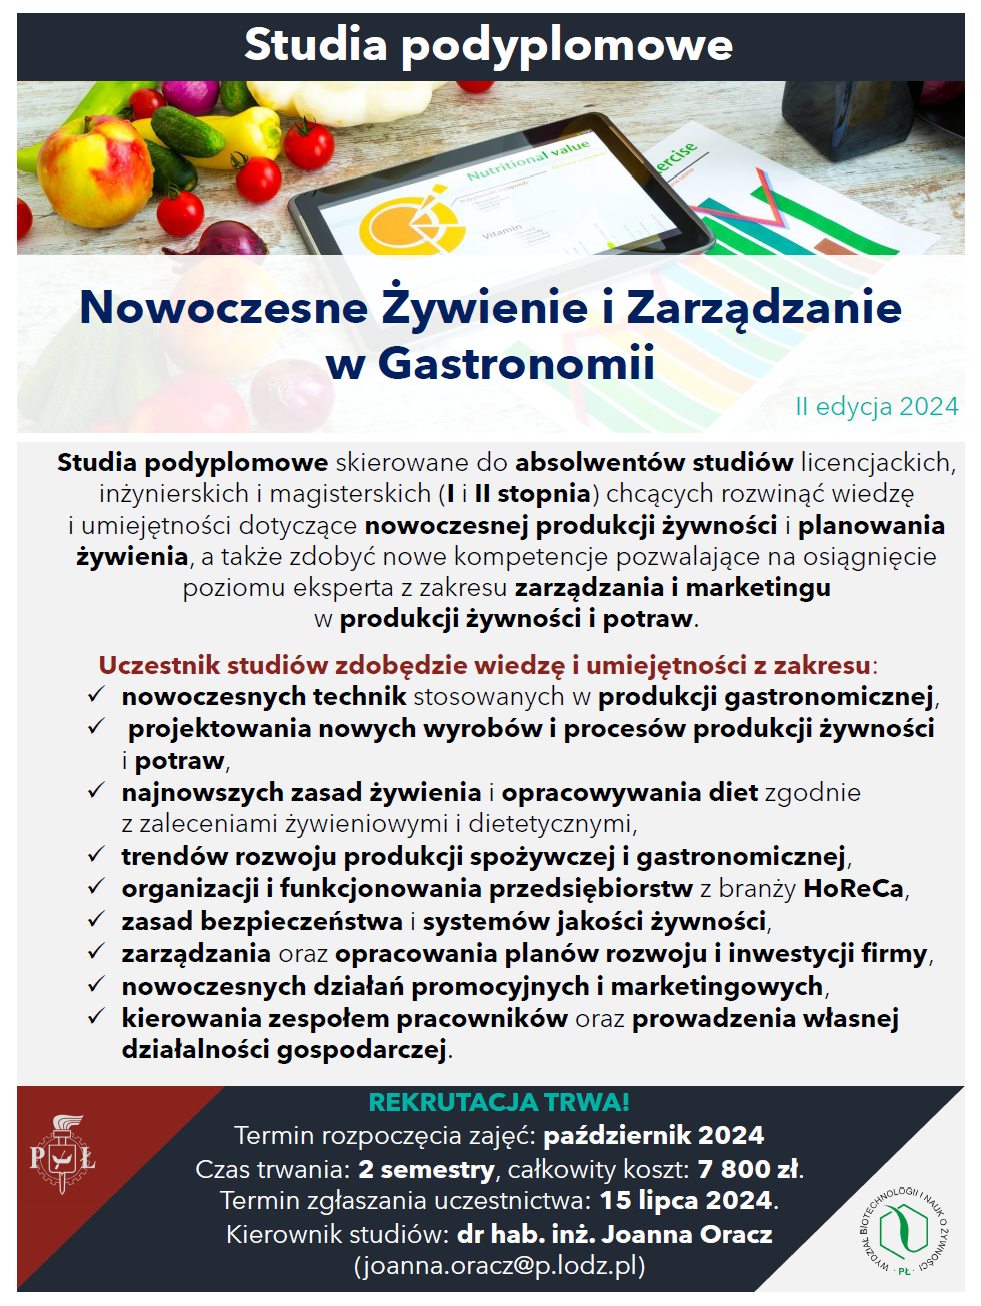 Studia Podyplomowe Nowoczesne Żywienie i Zarządzanie w Gastronomii